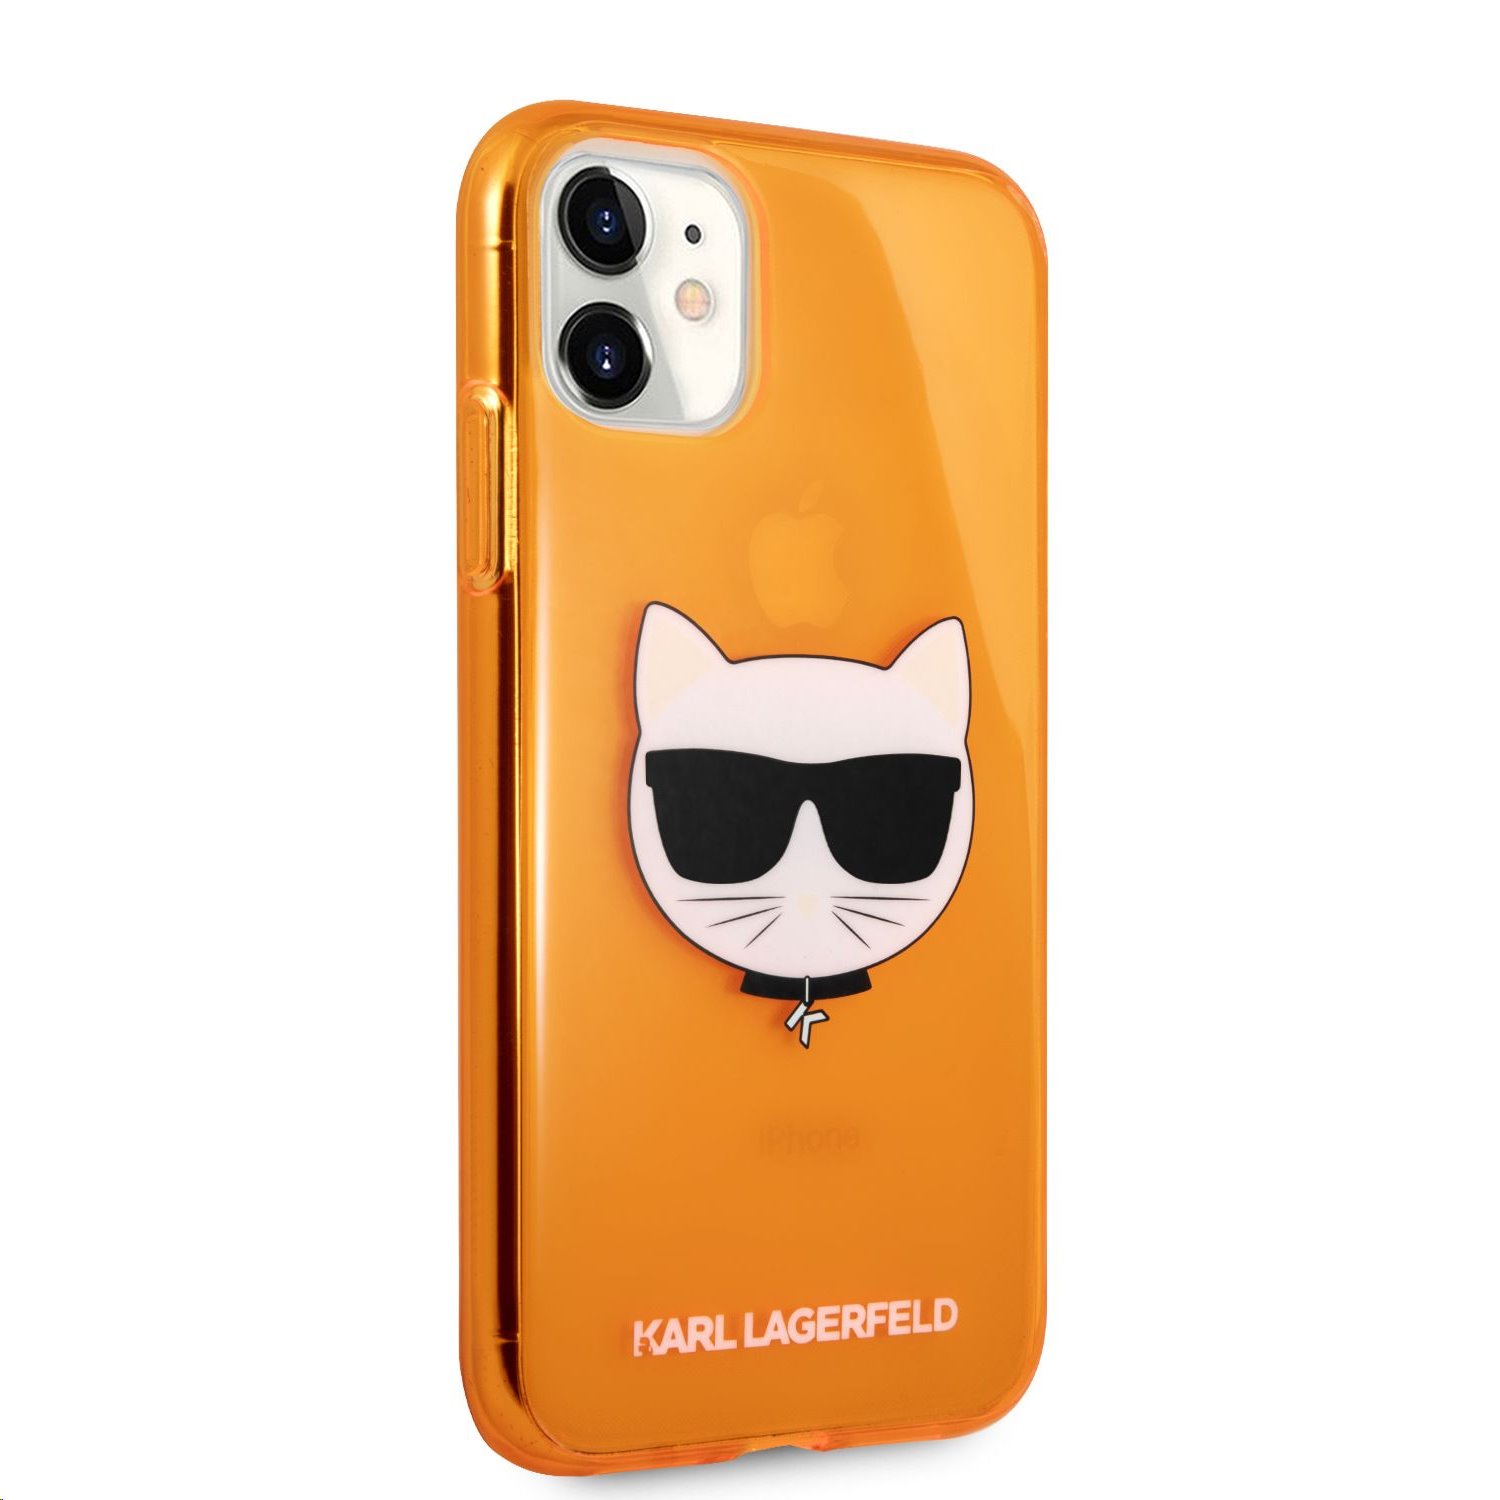 Silikonové pouzdro Karl Lagerfeld Choupette Head KLHCN61CHTRO pro Apple iPhone 11, oranžová